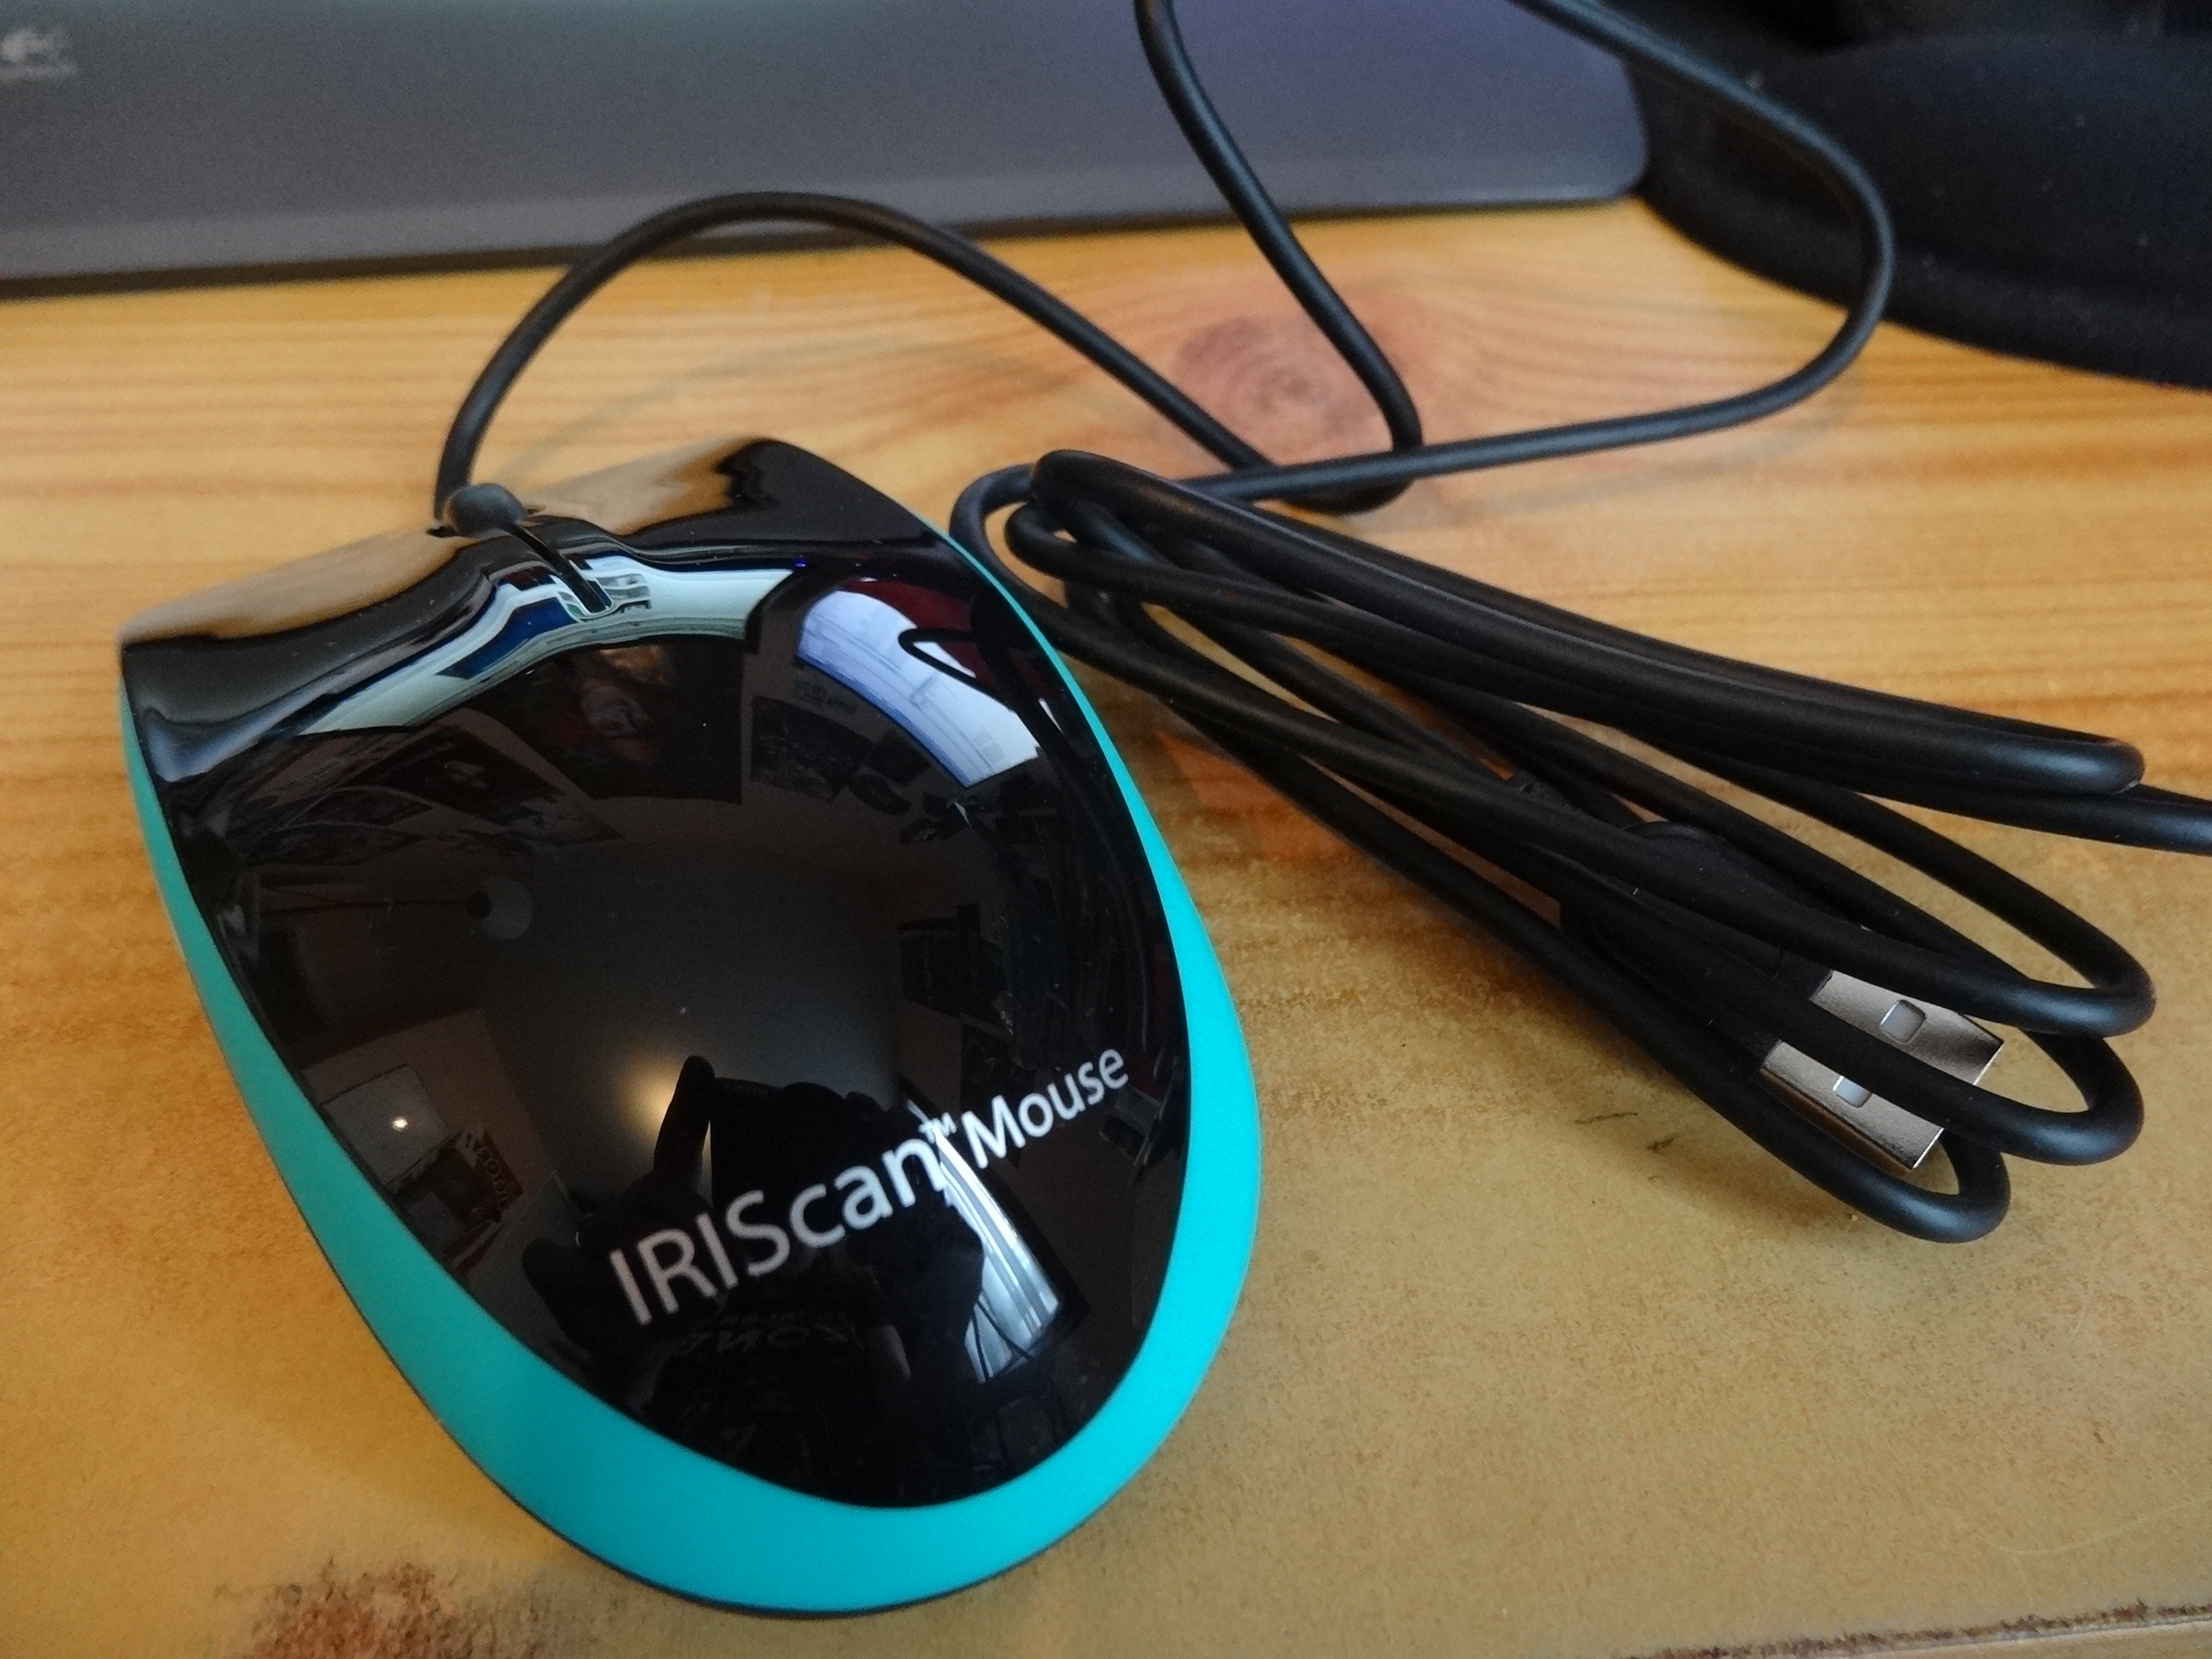 High-Tech] On a testé la souris scanner IRIScan Mouse